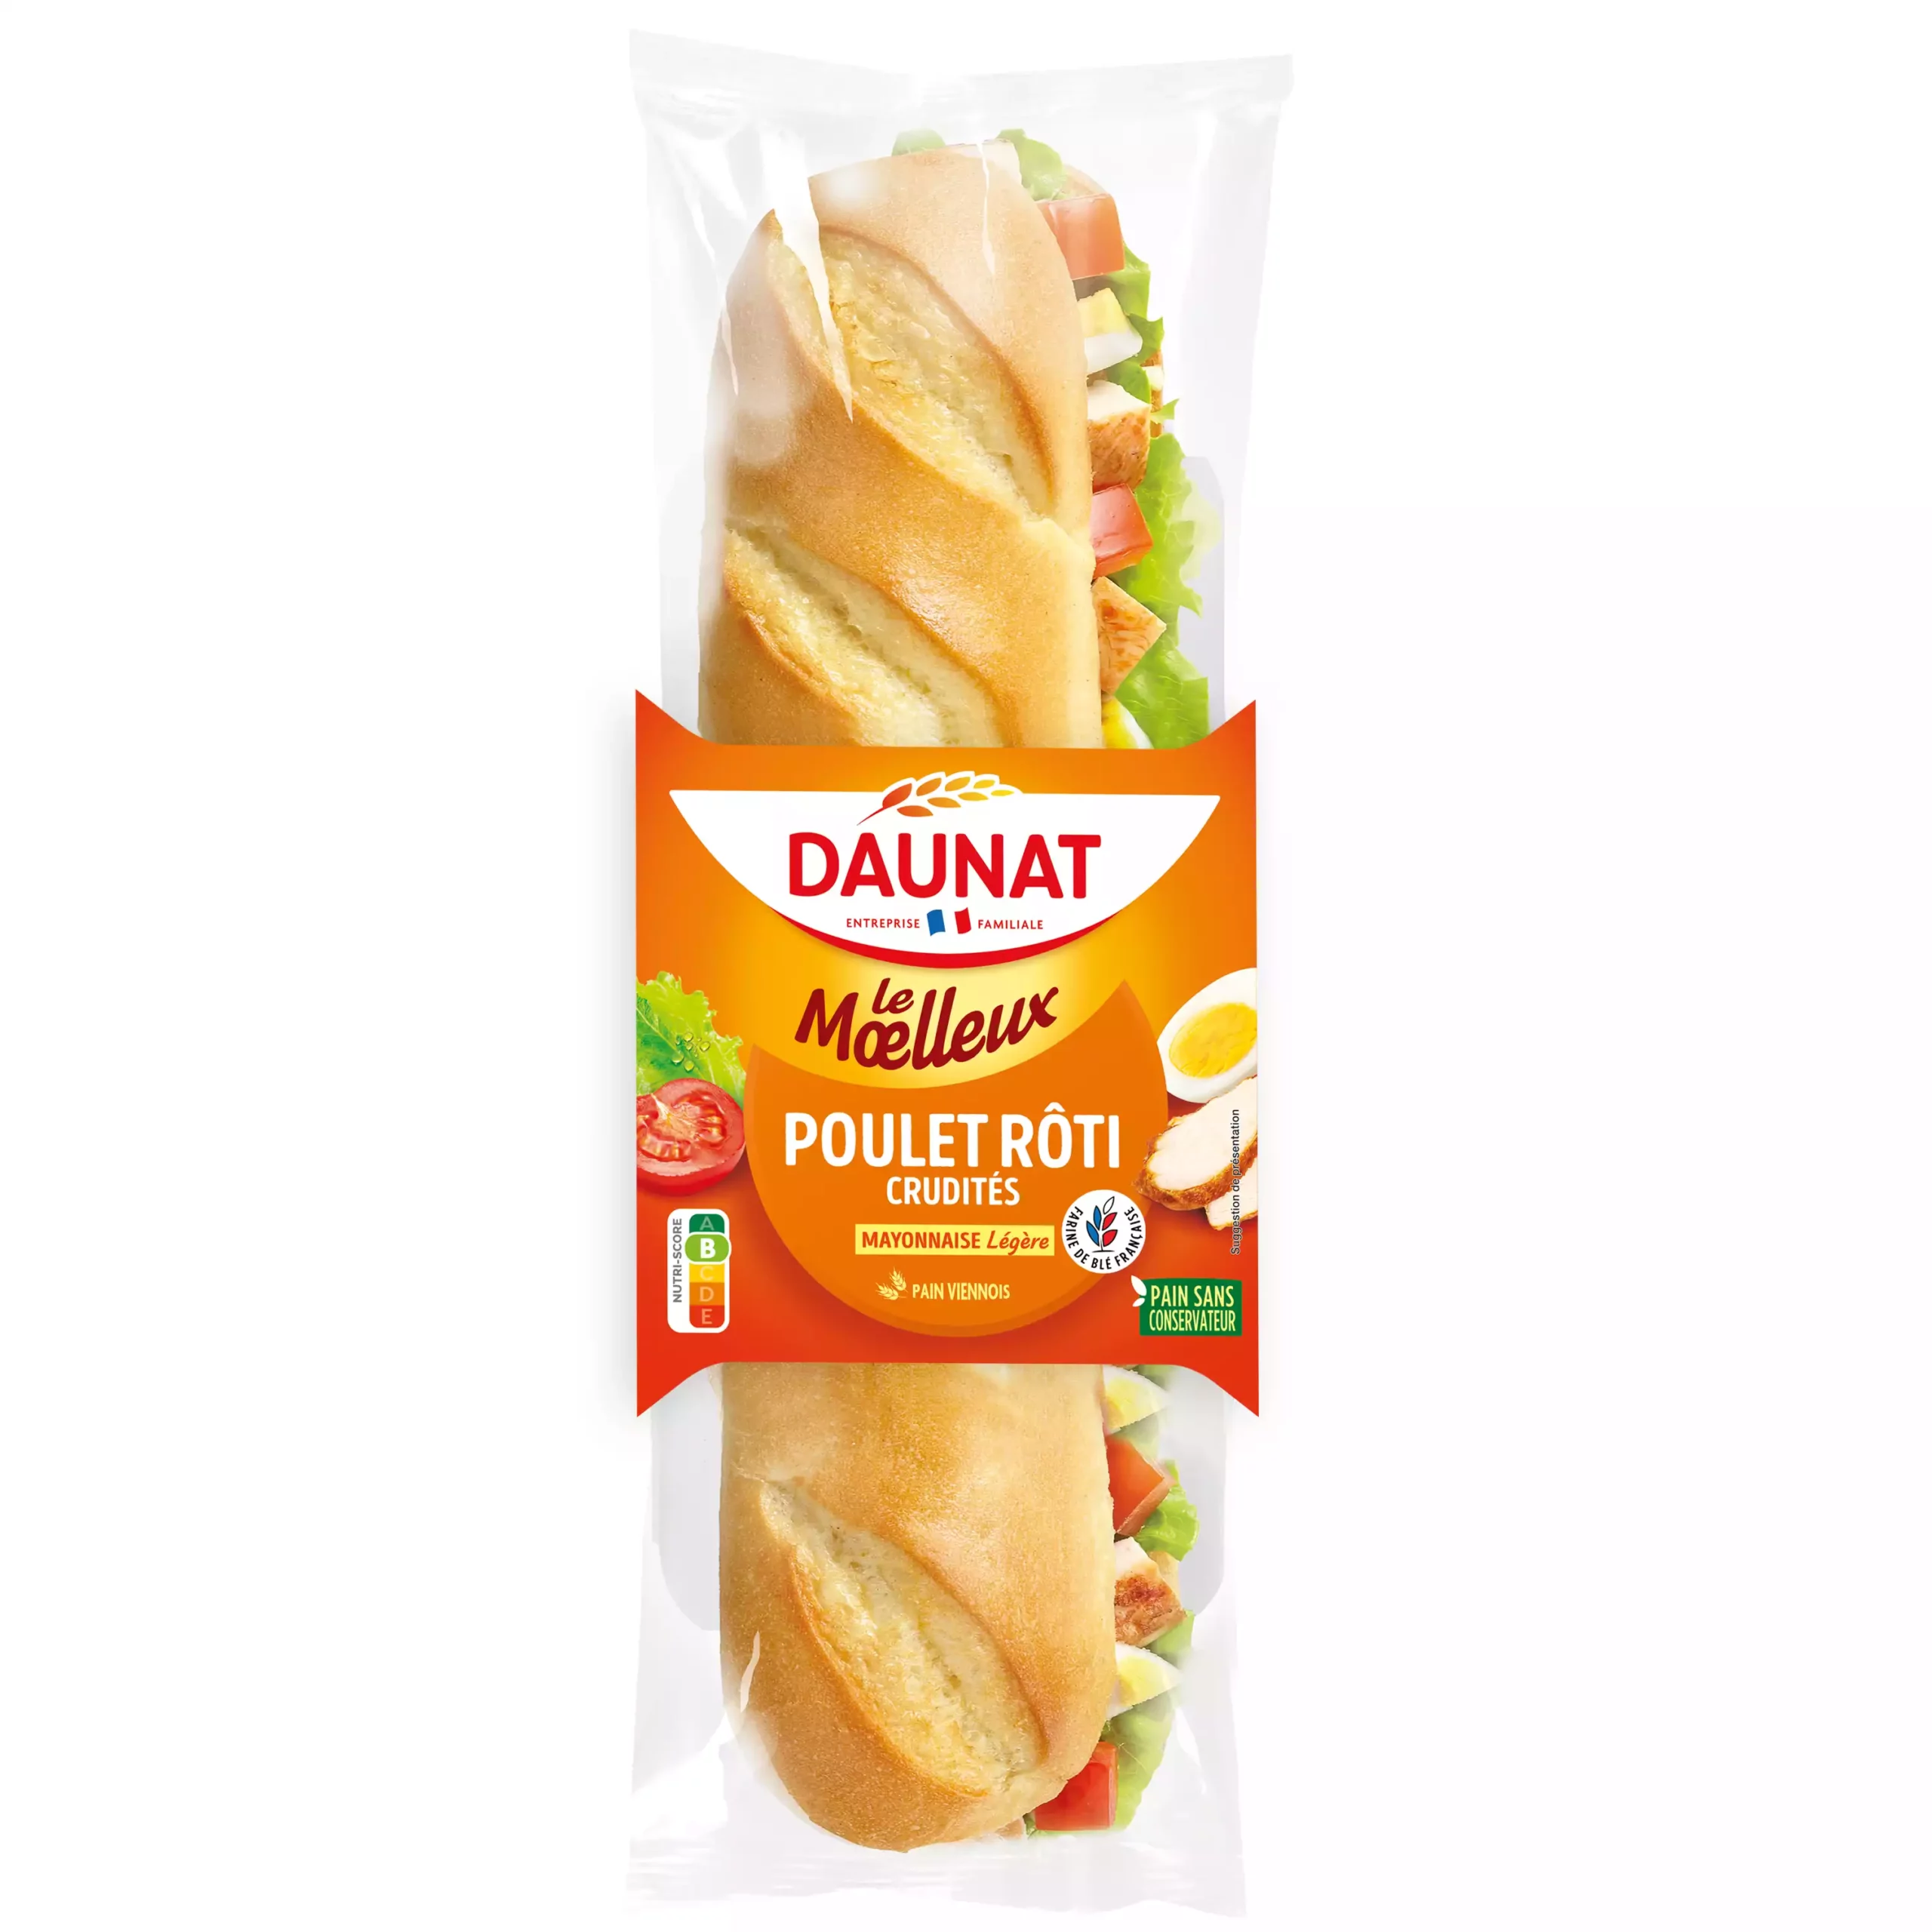 Sandwich baguette Le Moelleux Poulet crudites 230g